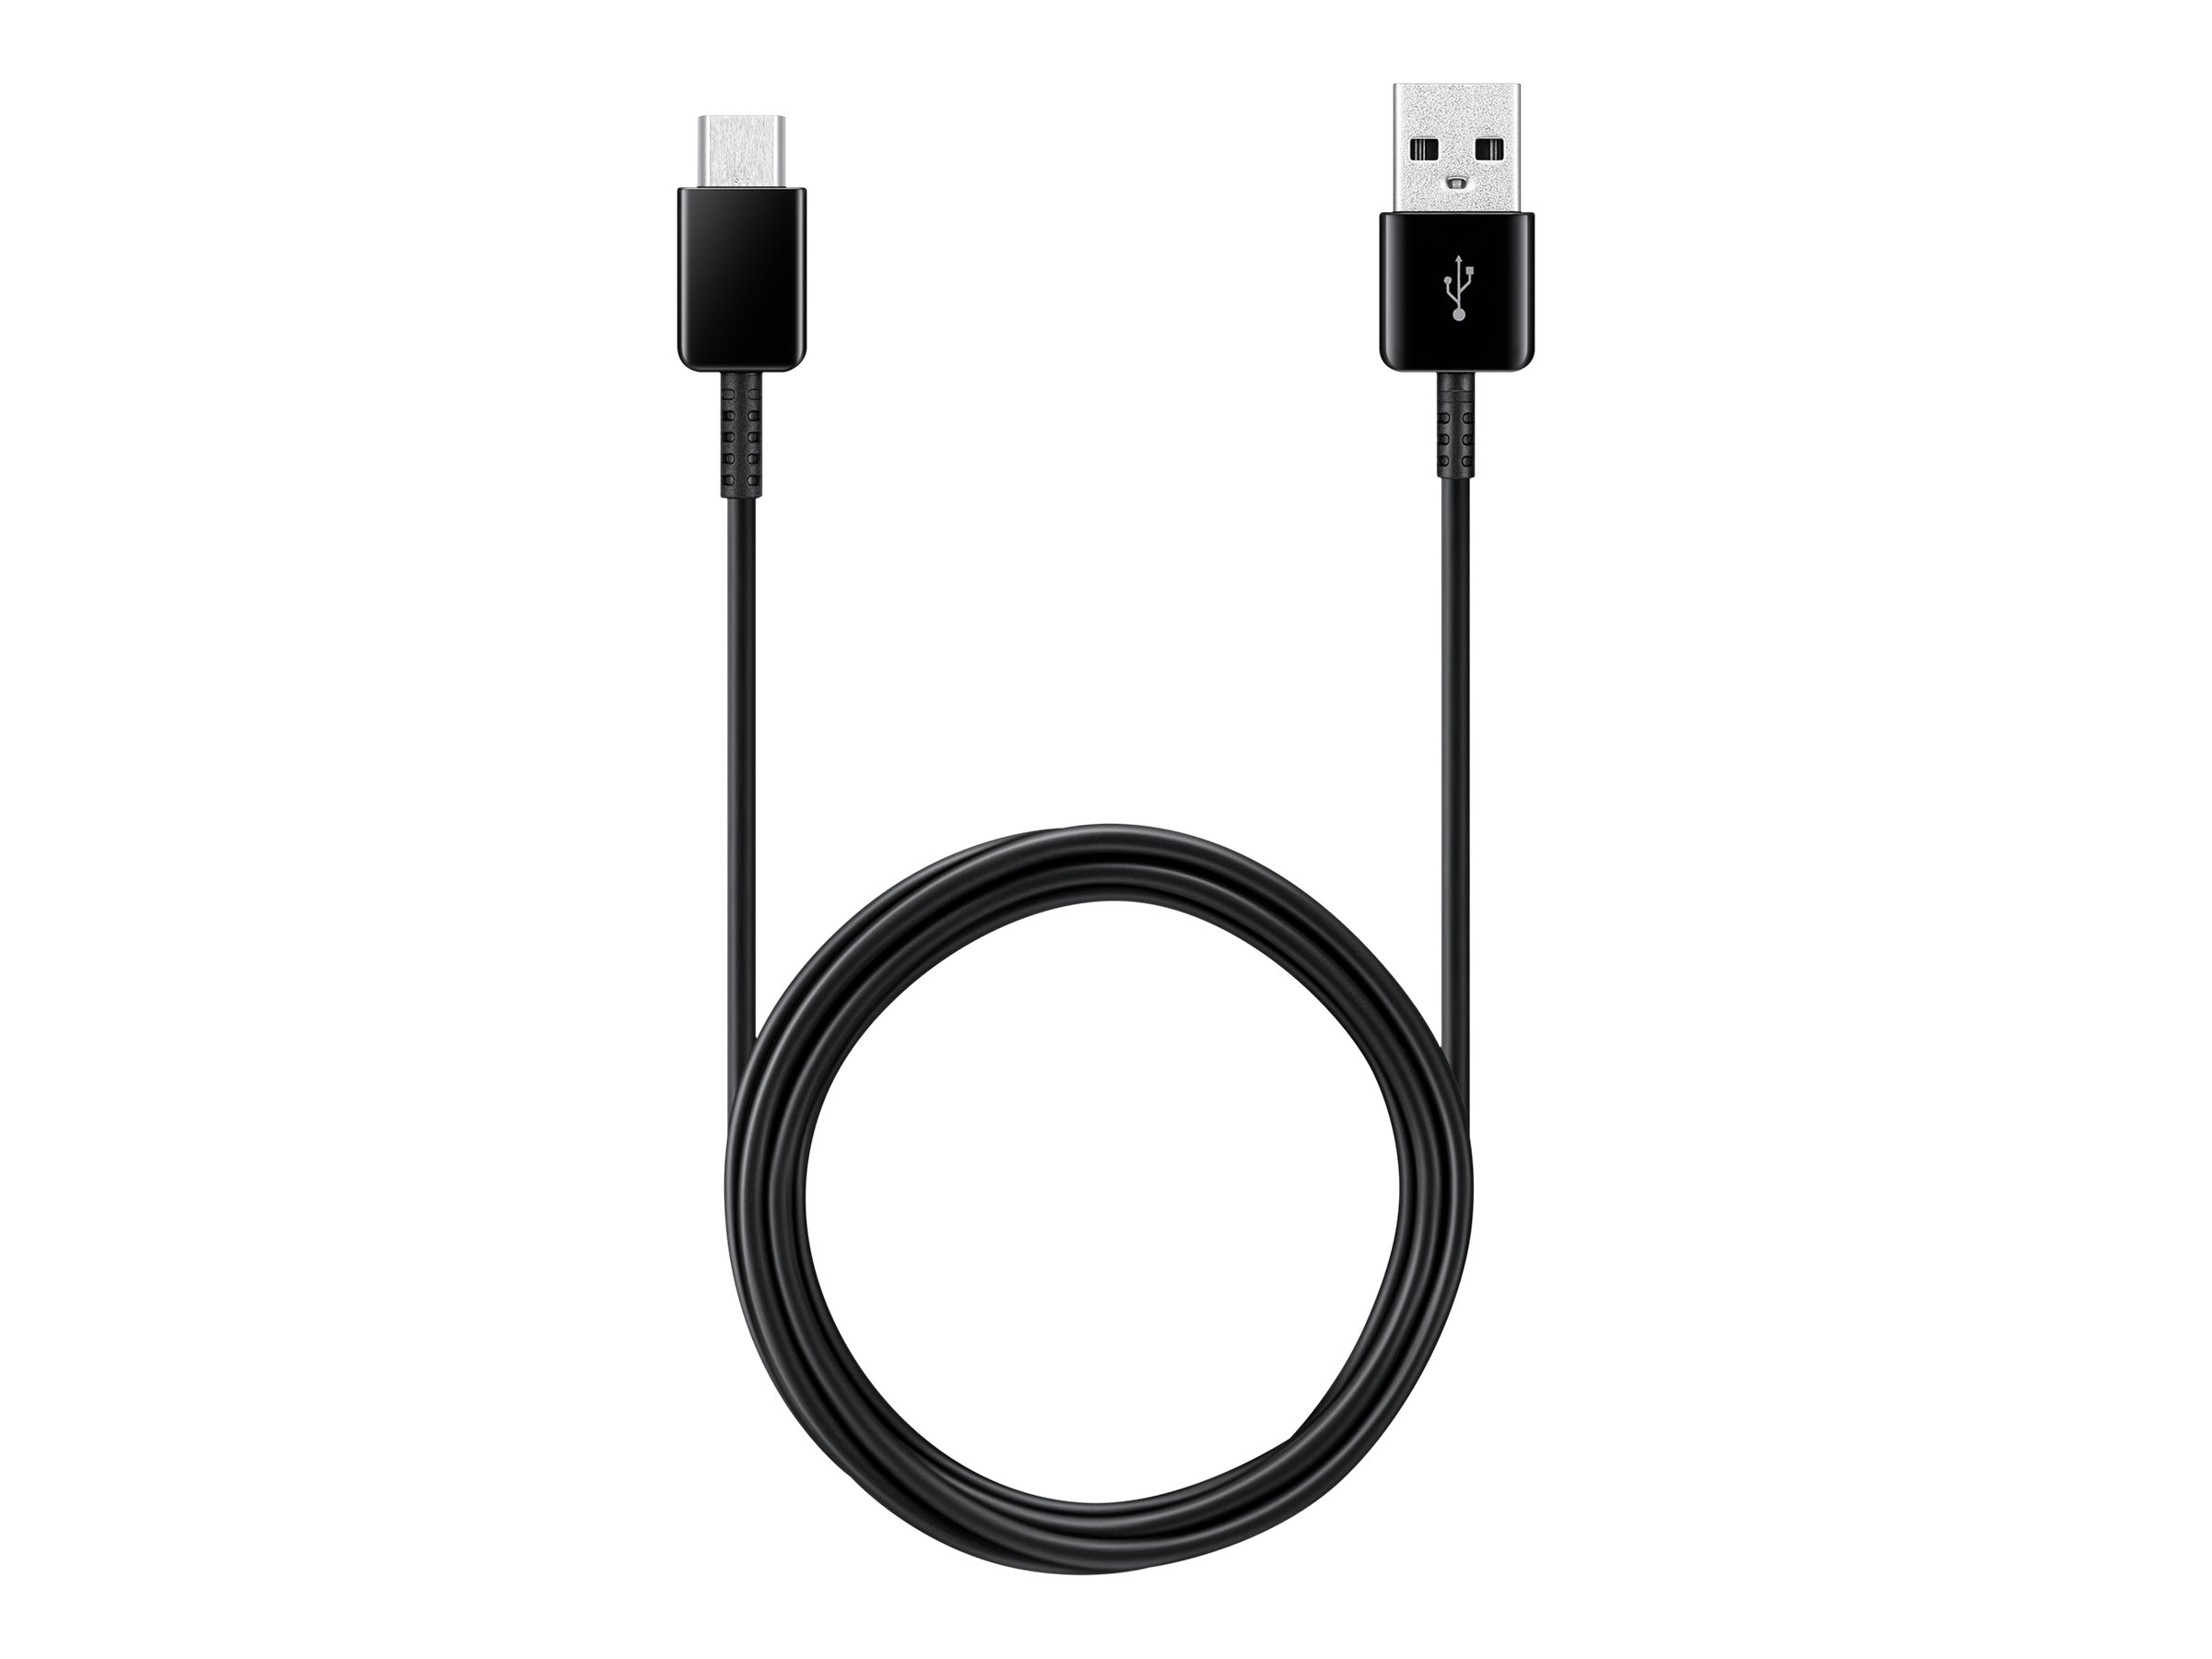 Samsung EP-DG930M - USB-Kabel - USB (M) zu 24 pin USB-C (M) - USB 2.0 - 1.5 m - Schwarz